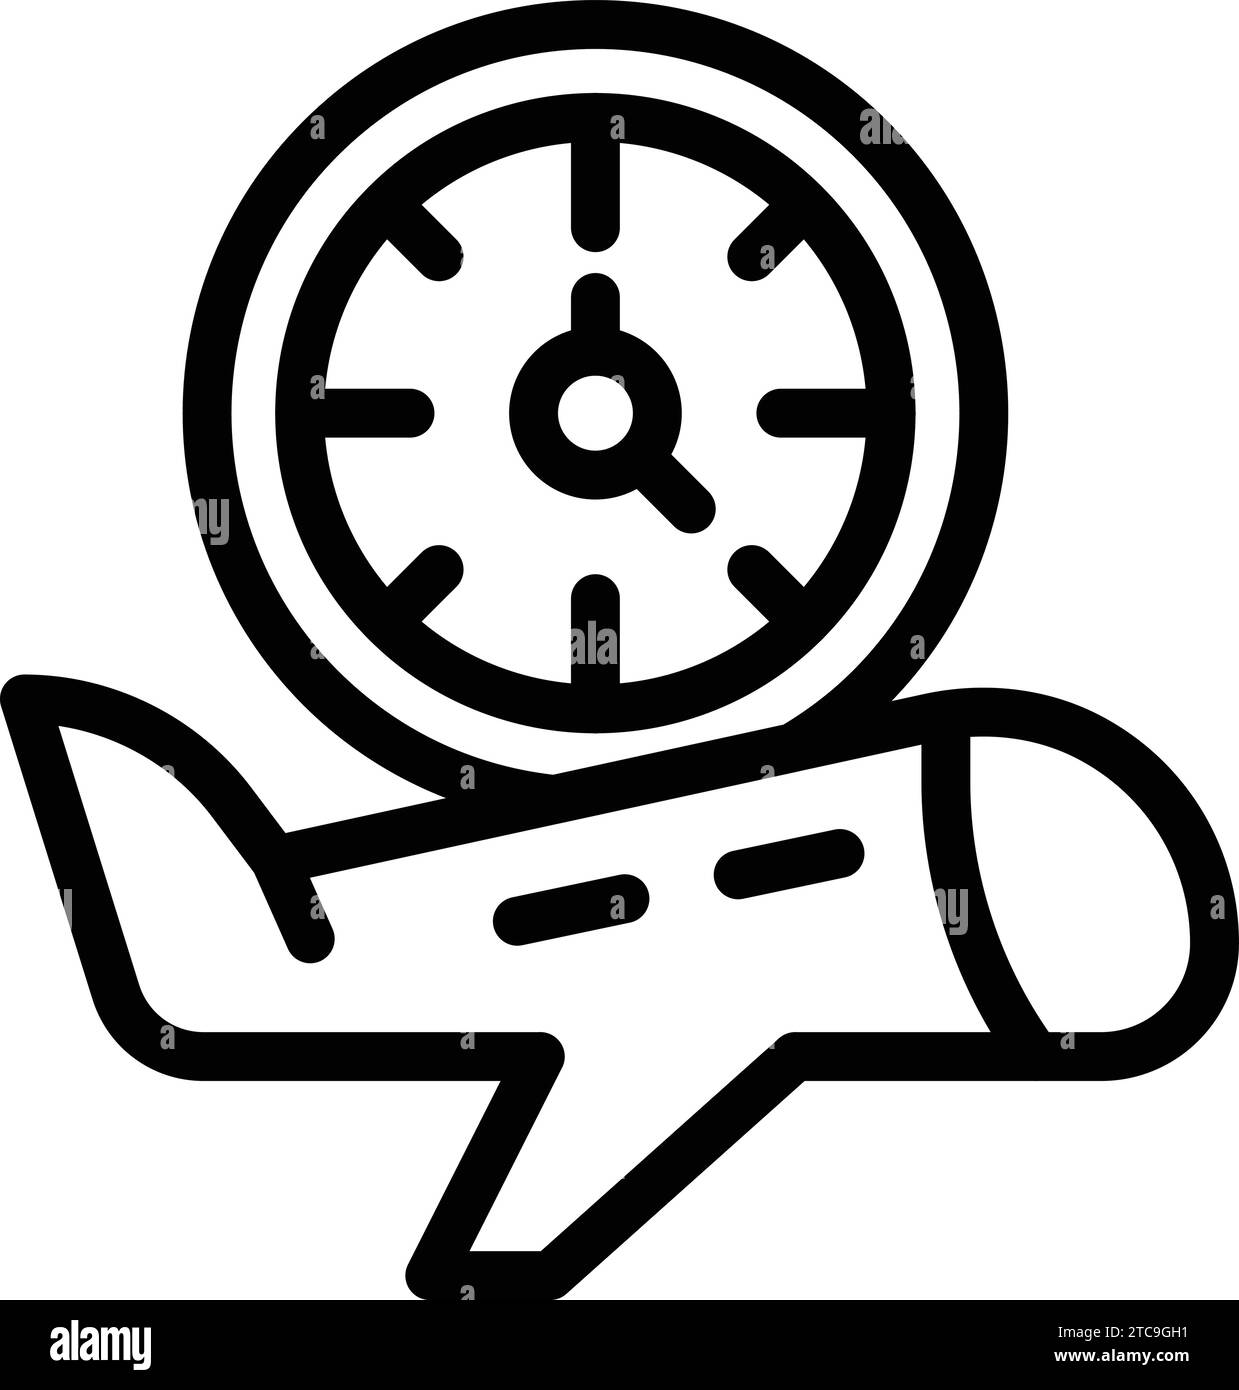 Umrissvektor für das Symbol für die Abflugzeit. Zeitplan für die Ankunft des Fluges. Flughafenflugprogramm Stock Vektor